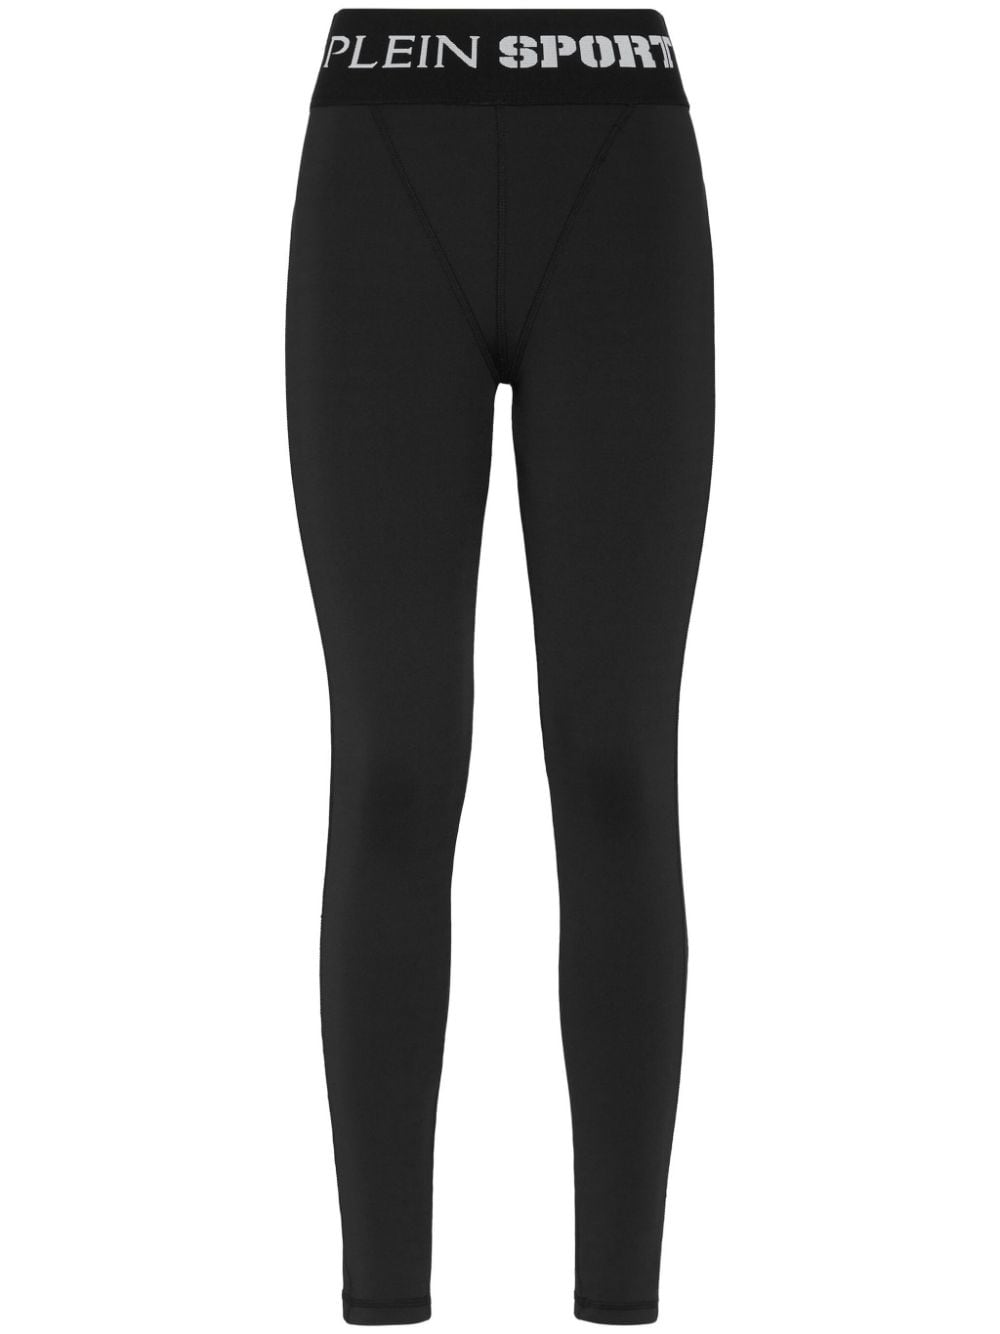 Plein Sport logo-waistband leggings - Black von Plein Sport